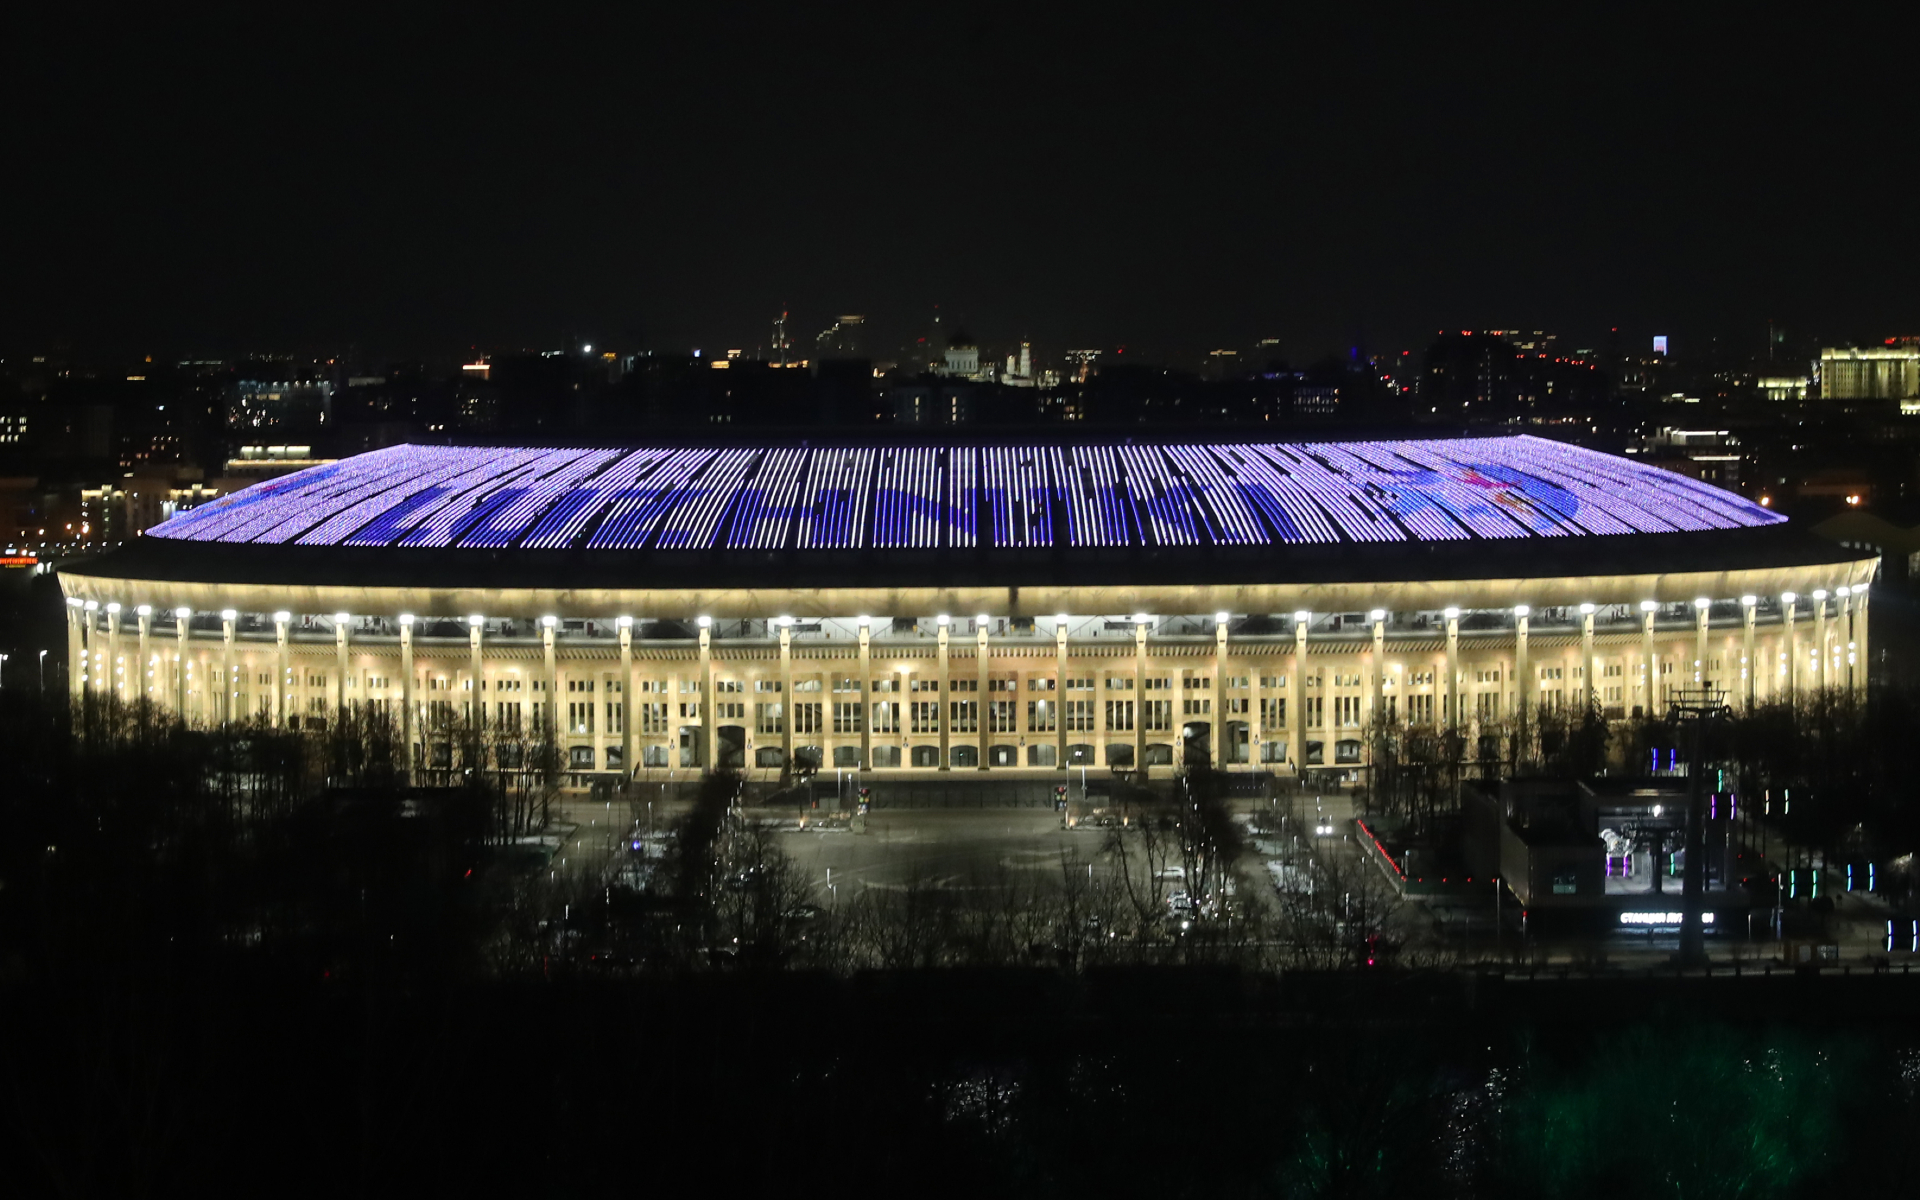 Стадион «Спартака» и «Лужники» вошли в топ лучших стадионов Европы